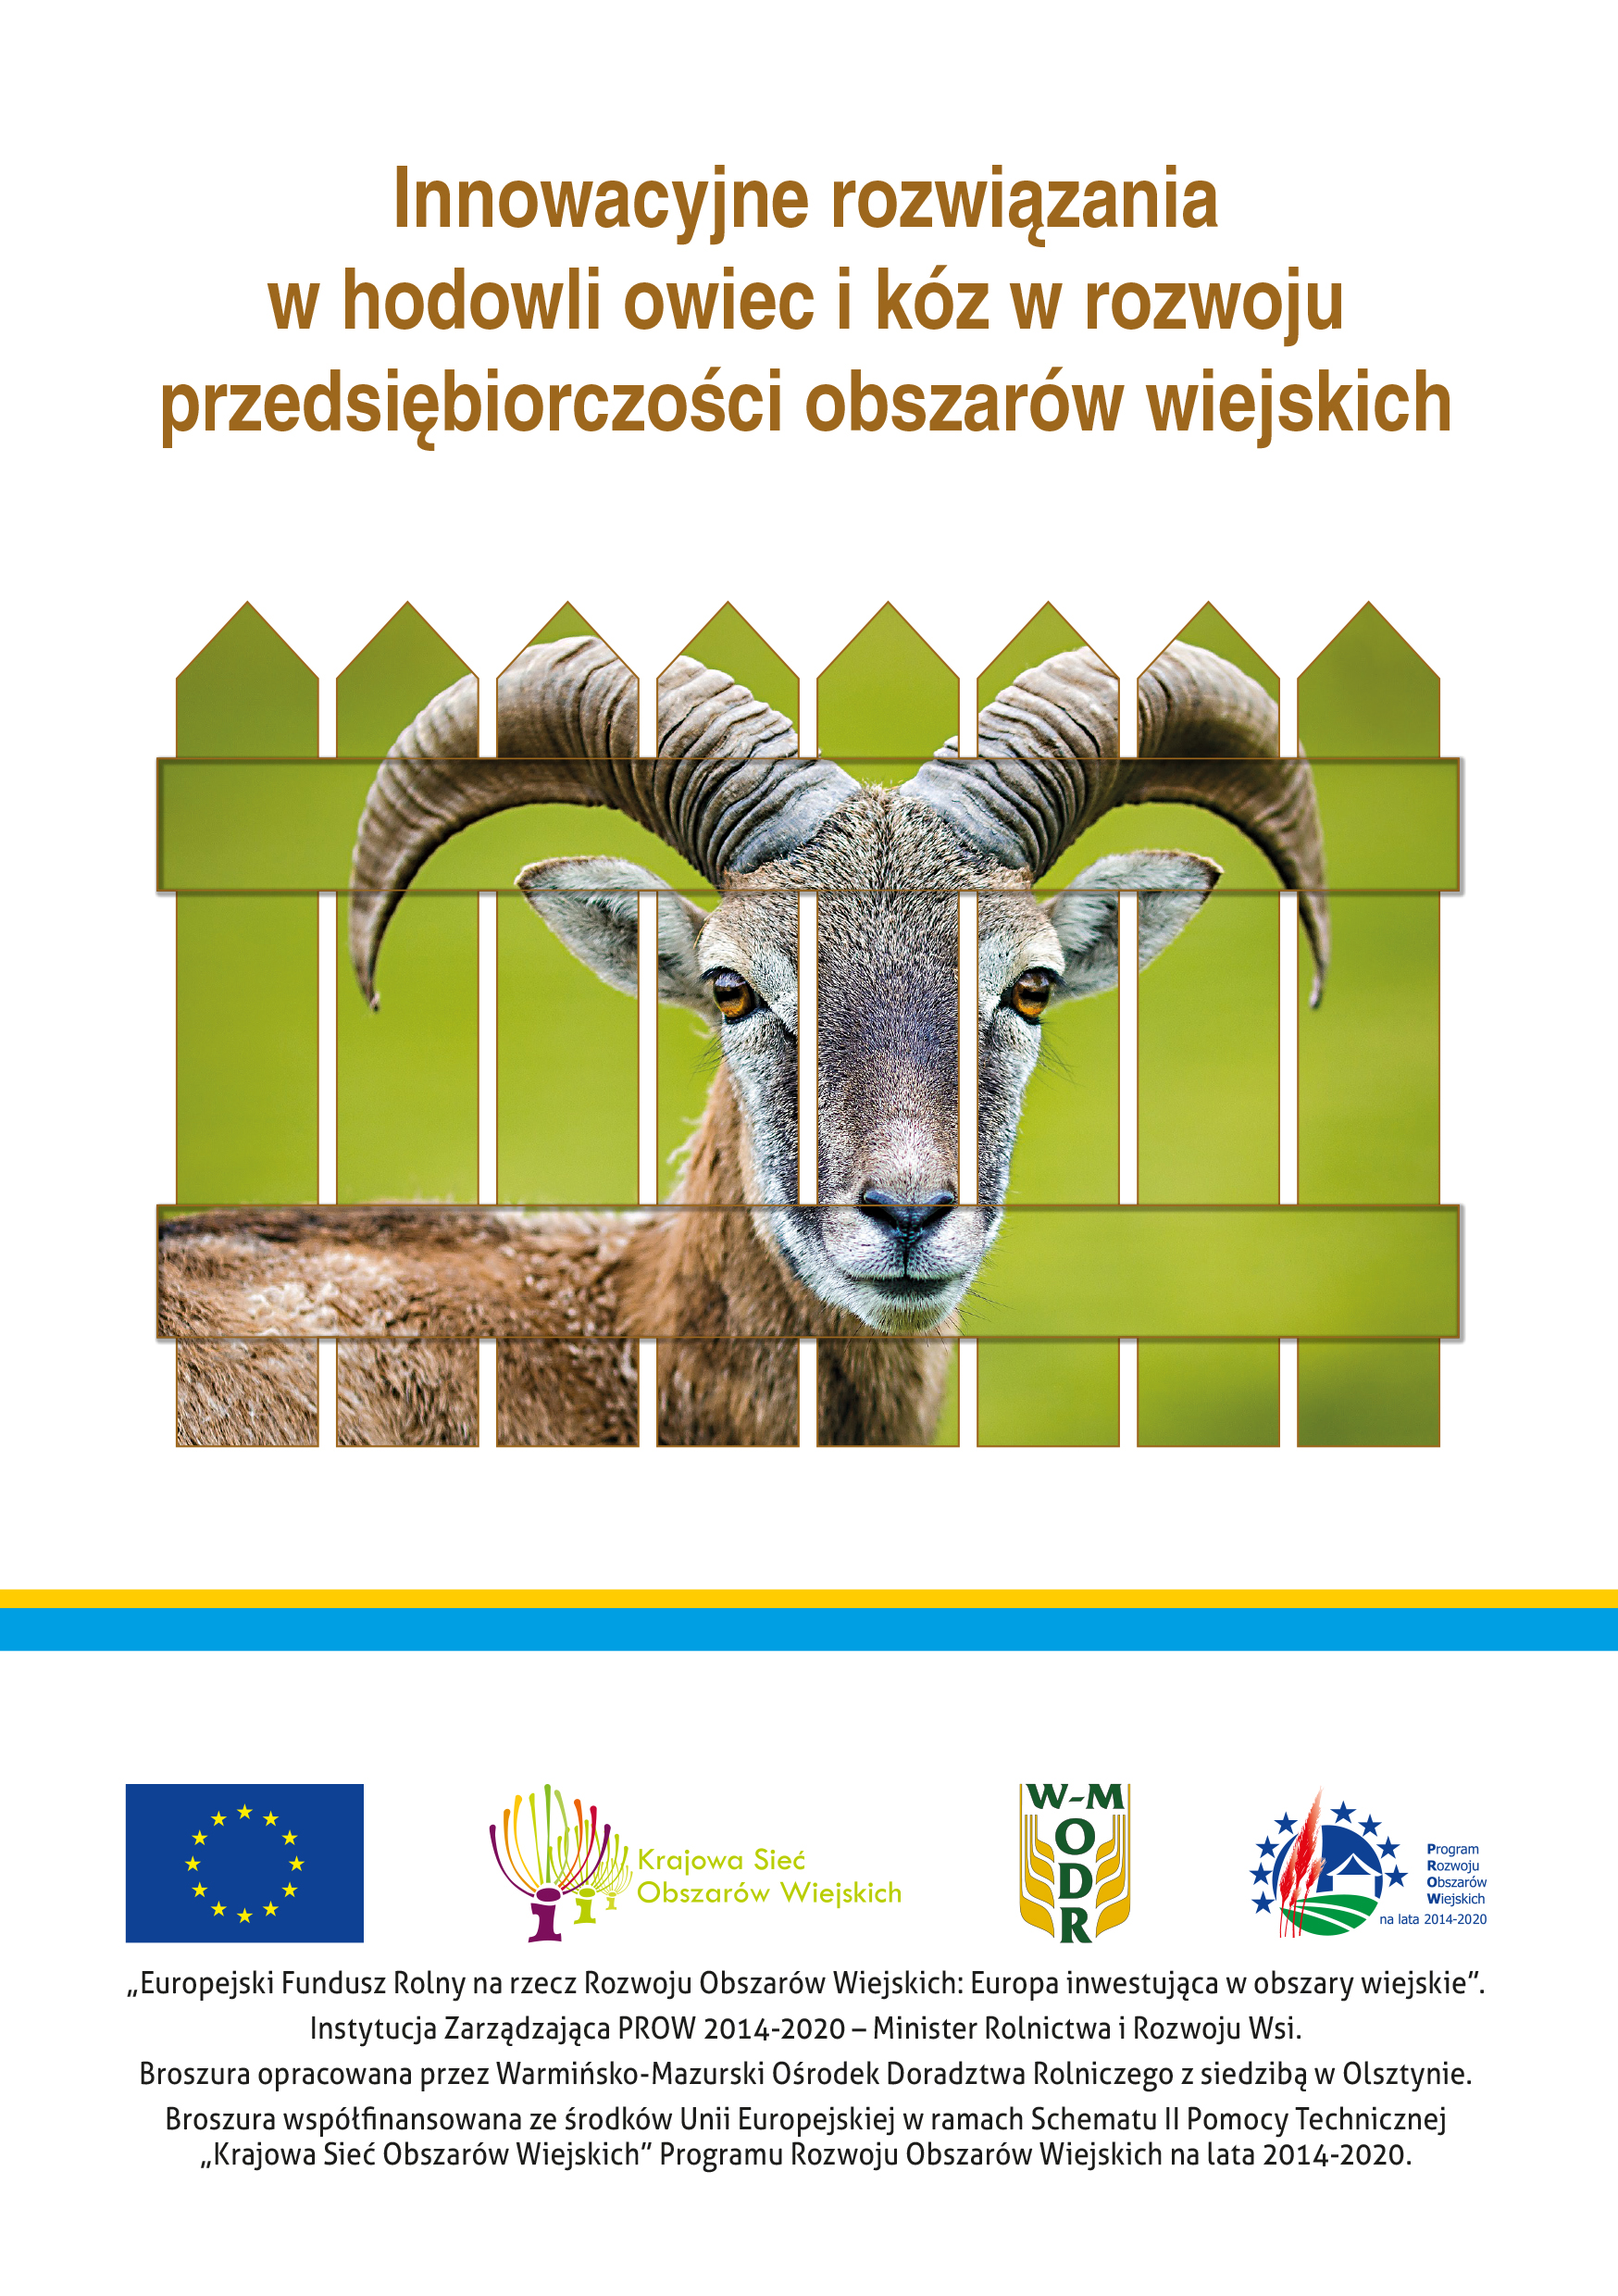 Innowacyjne rozwiązania w hodowli owiec i kóz w rozwoju przedsiębiorczości obszarów wiejskich